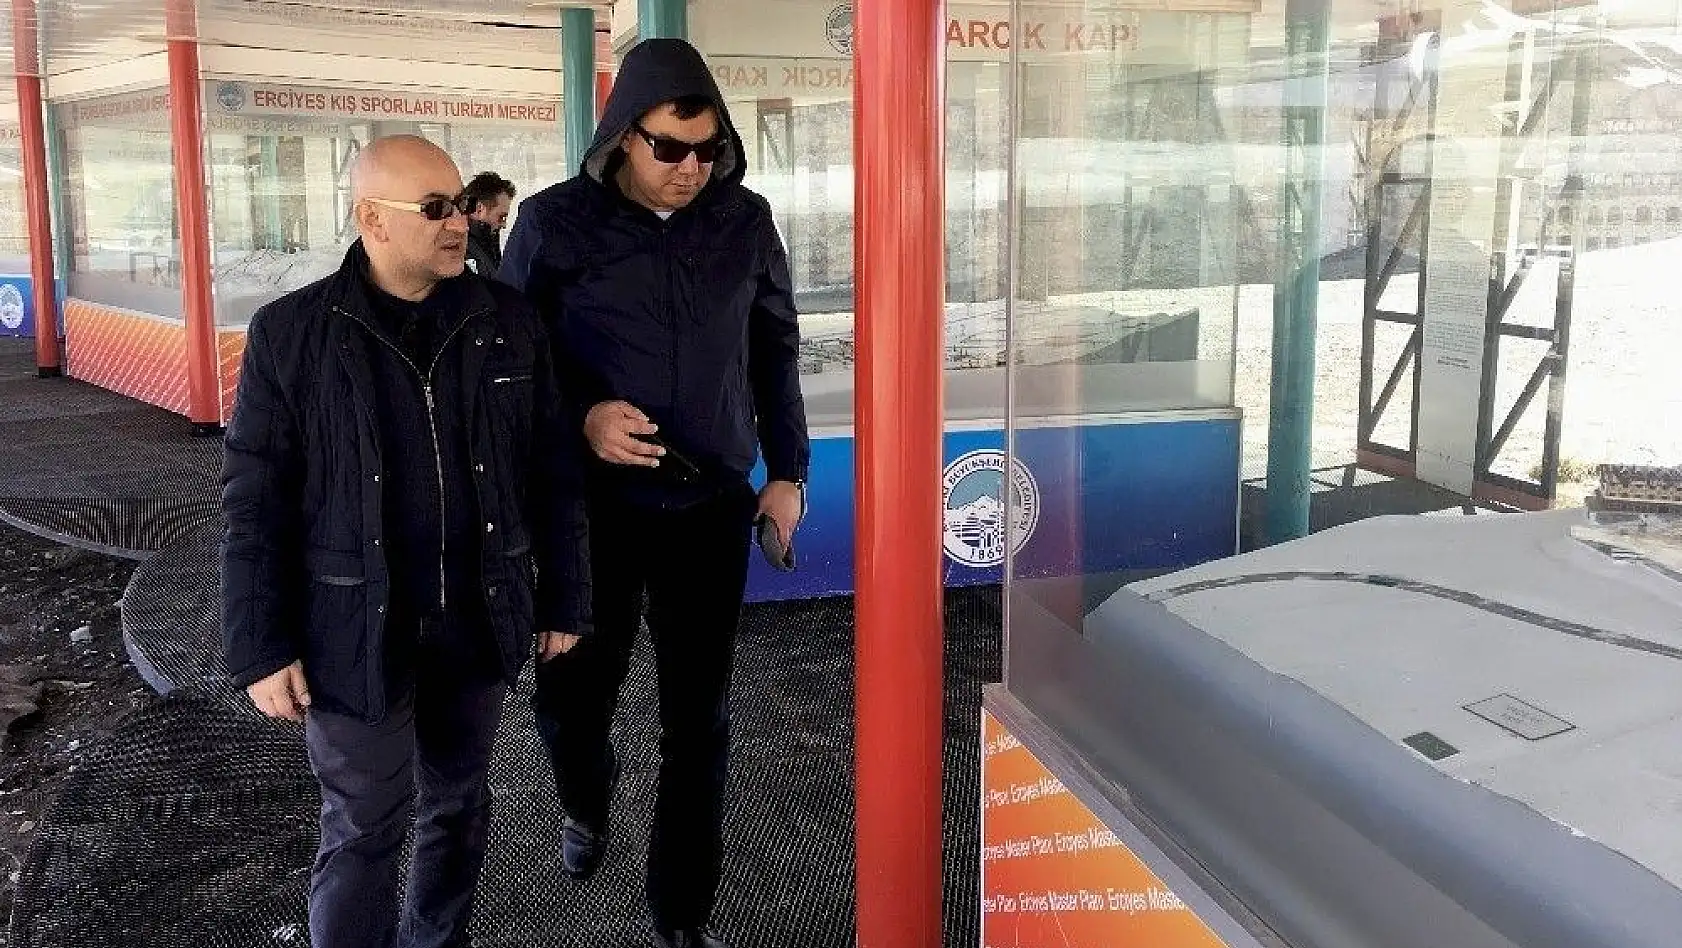 Özbekistan kış turizminde Erciyes ile iş birliği yapacak
